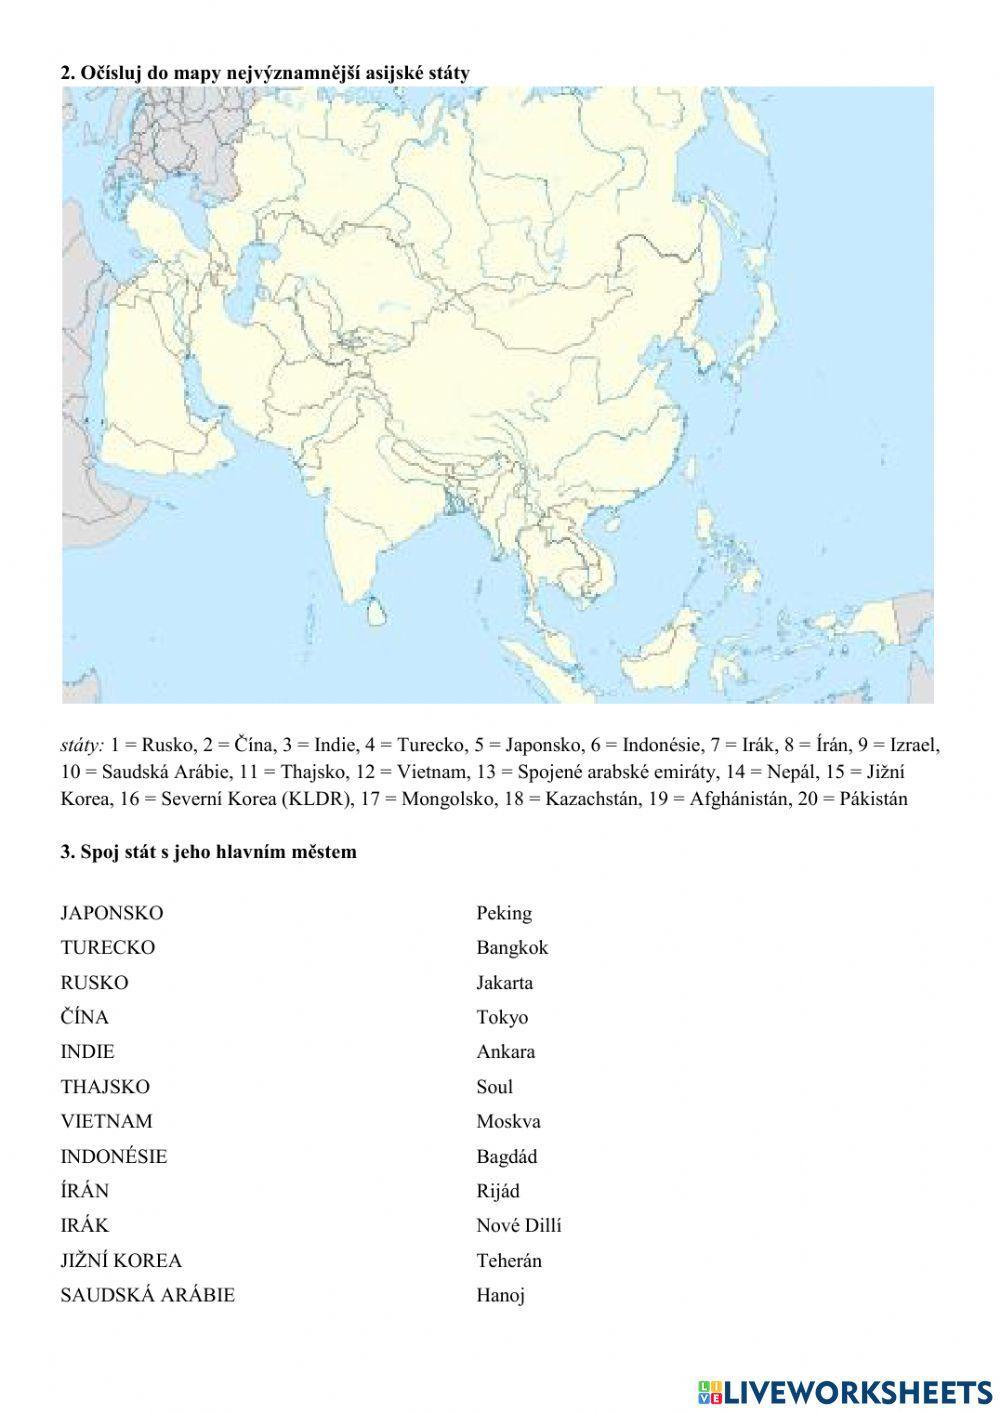 Asie - regiony, státy, města